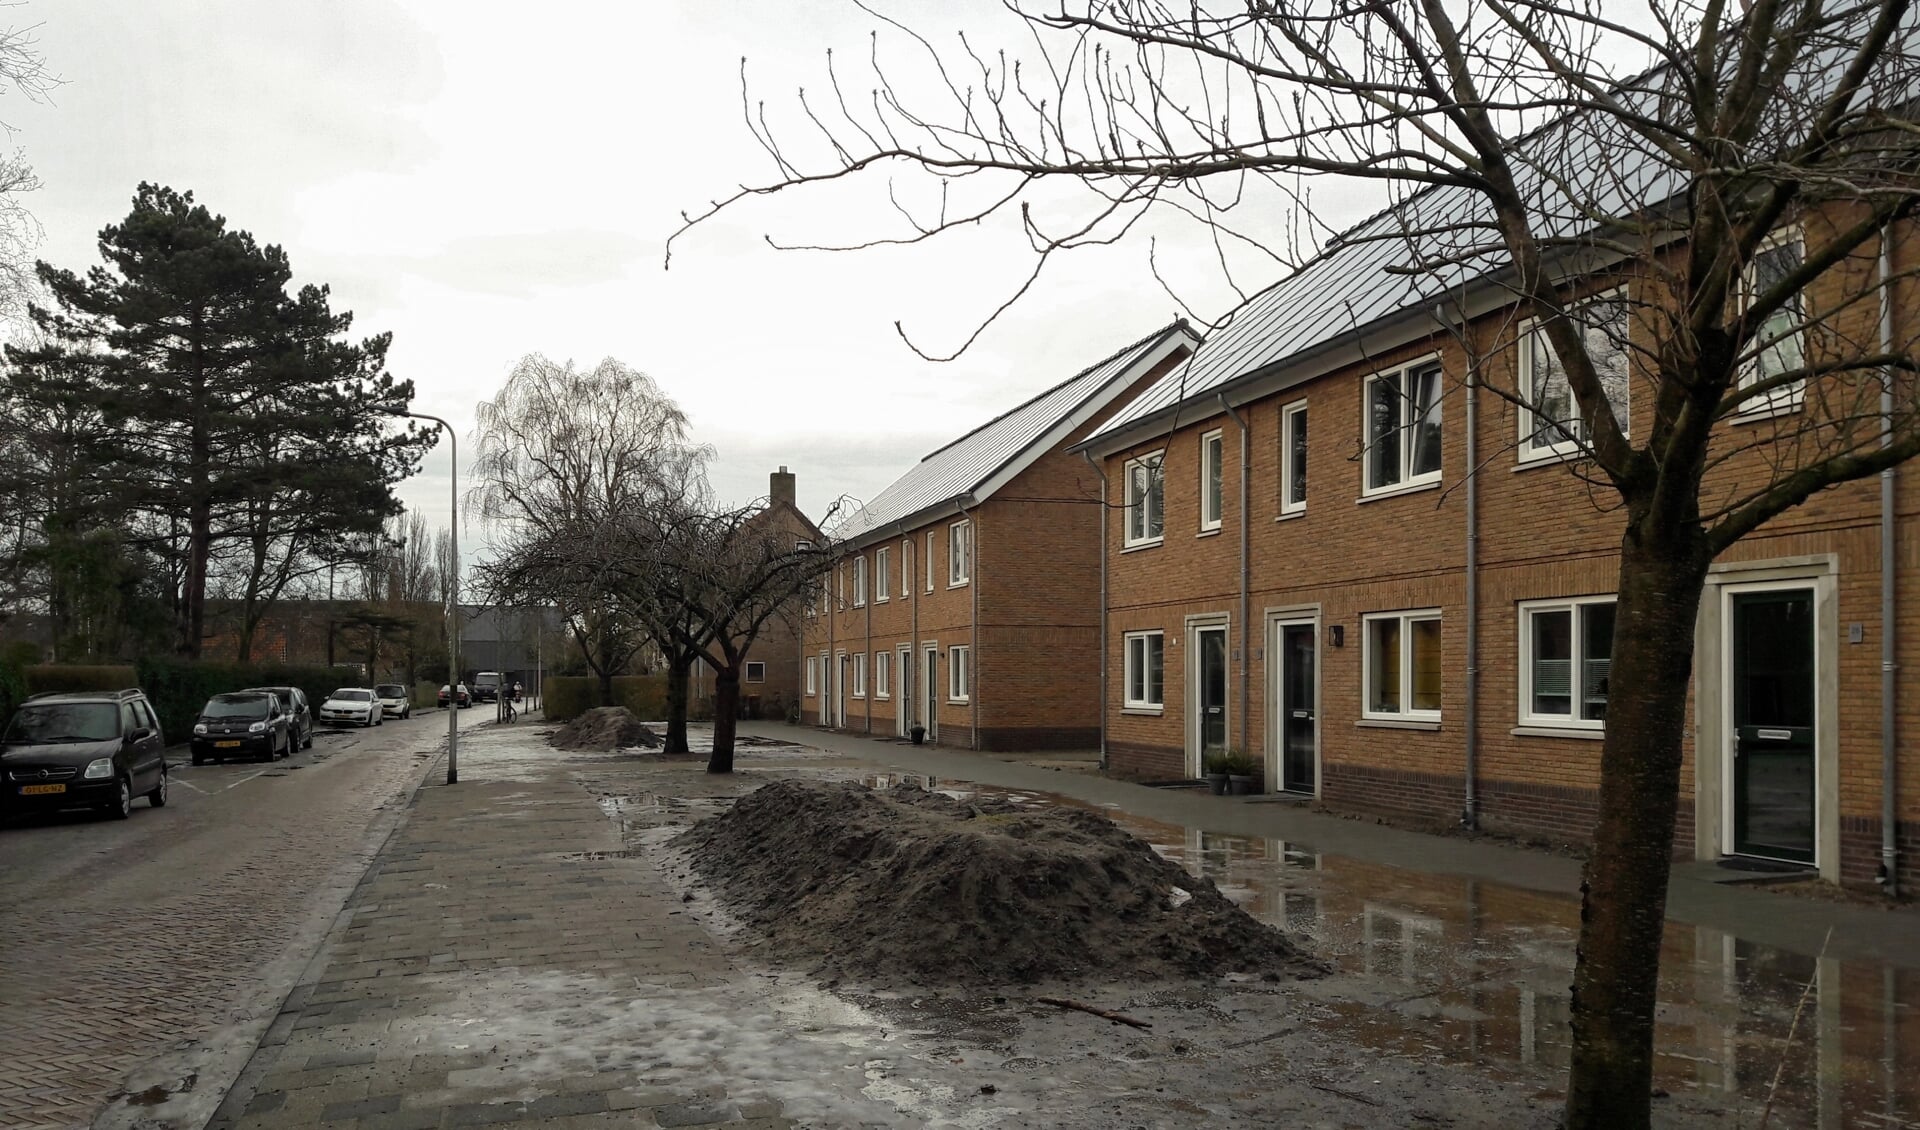 Enkele omwonenden noemen zich 'gedupeerd' door de sloop en bouw van de woningen aan de Jan Steenlaan. | Foto:MV